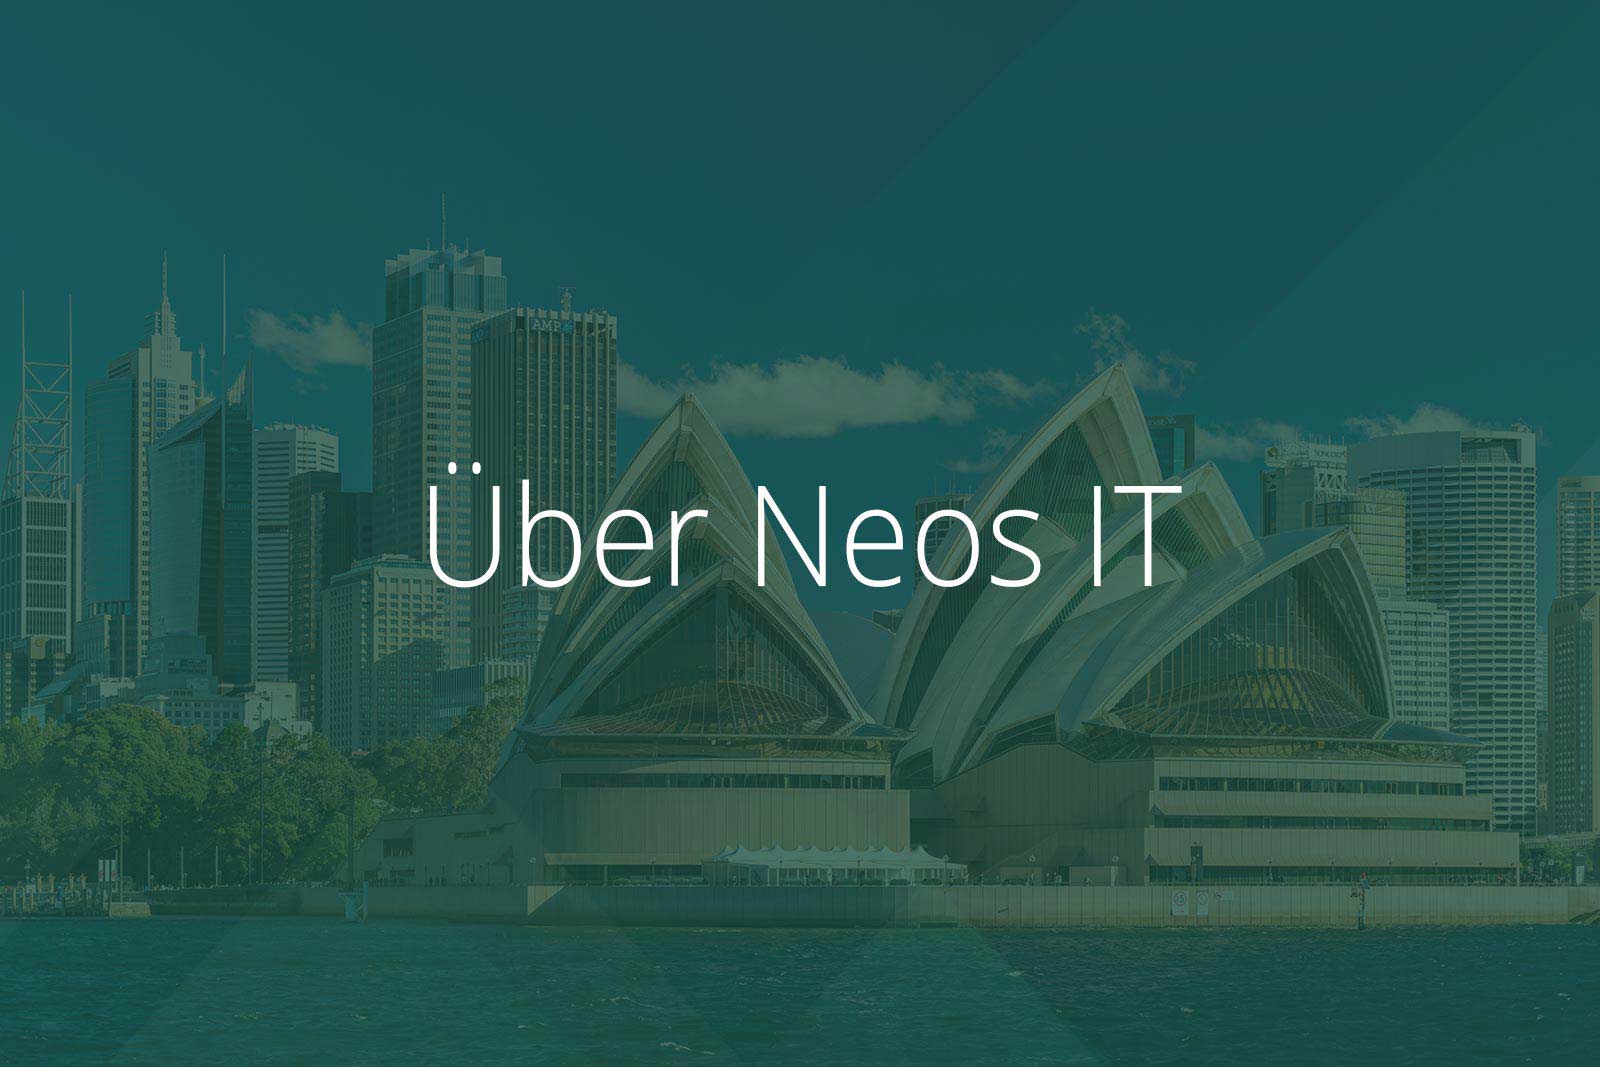 Über Neos IT Services, Abbildung Sydney